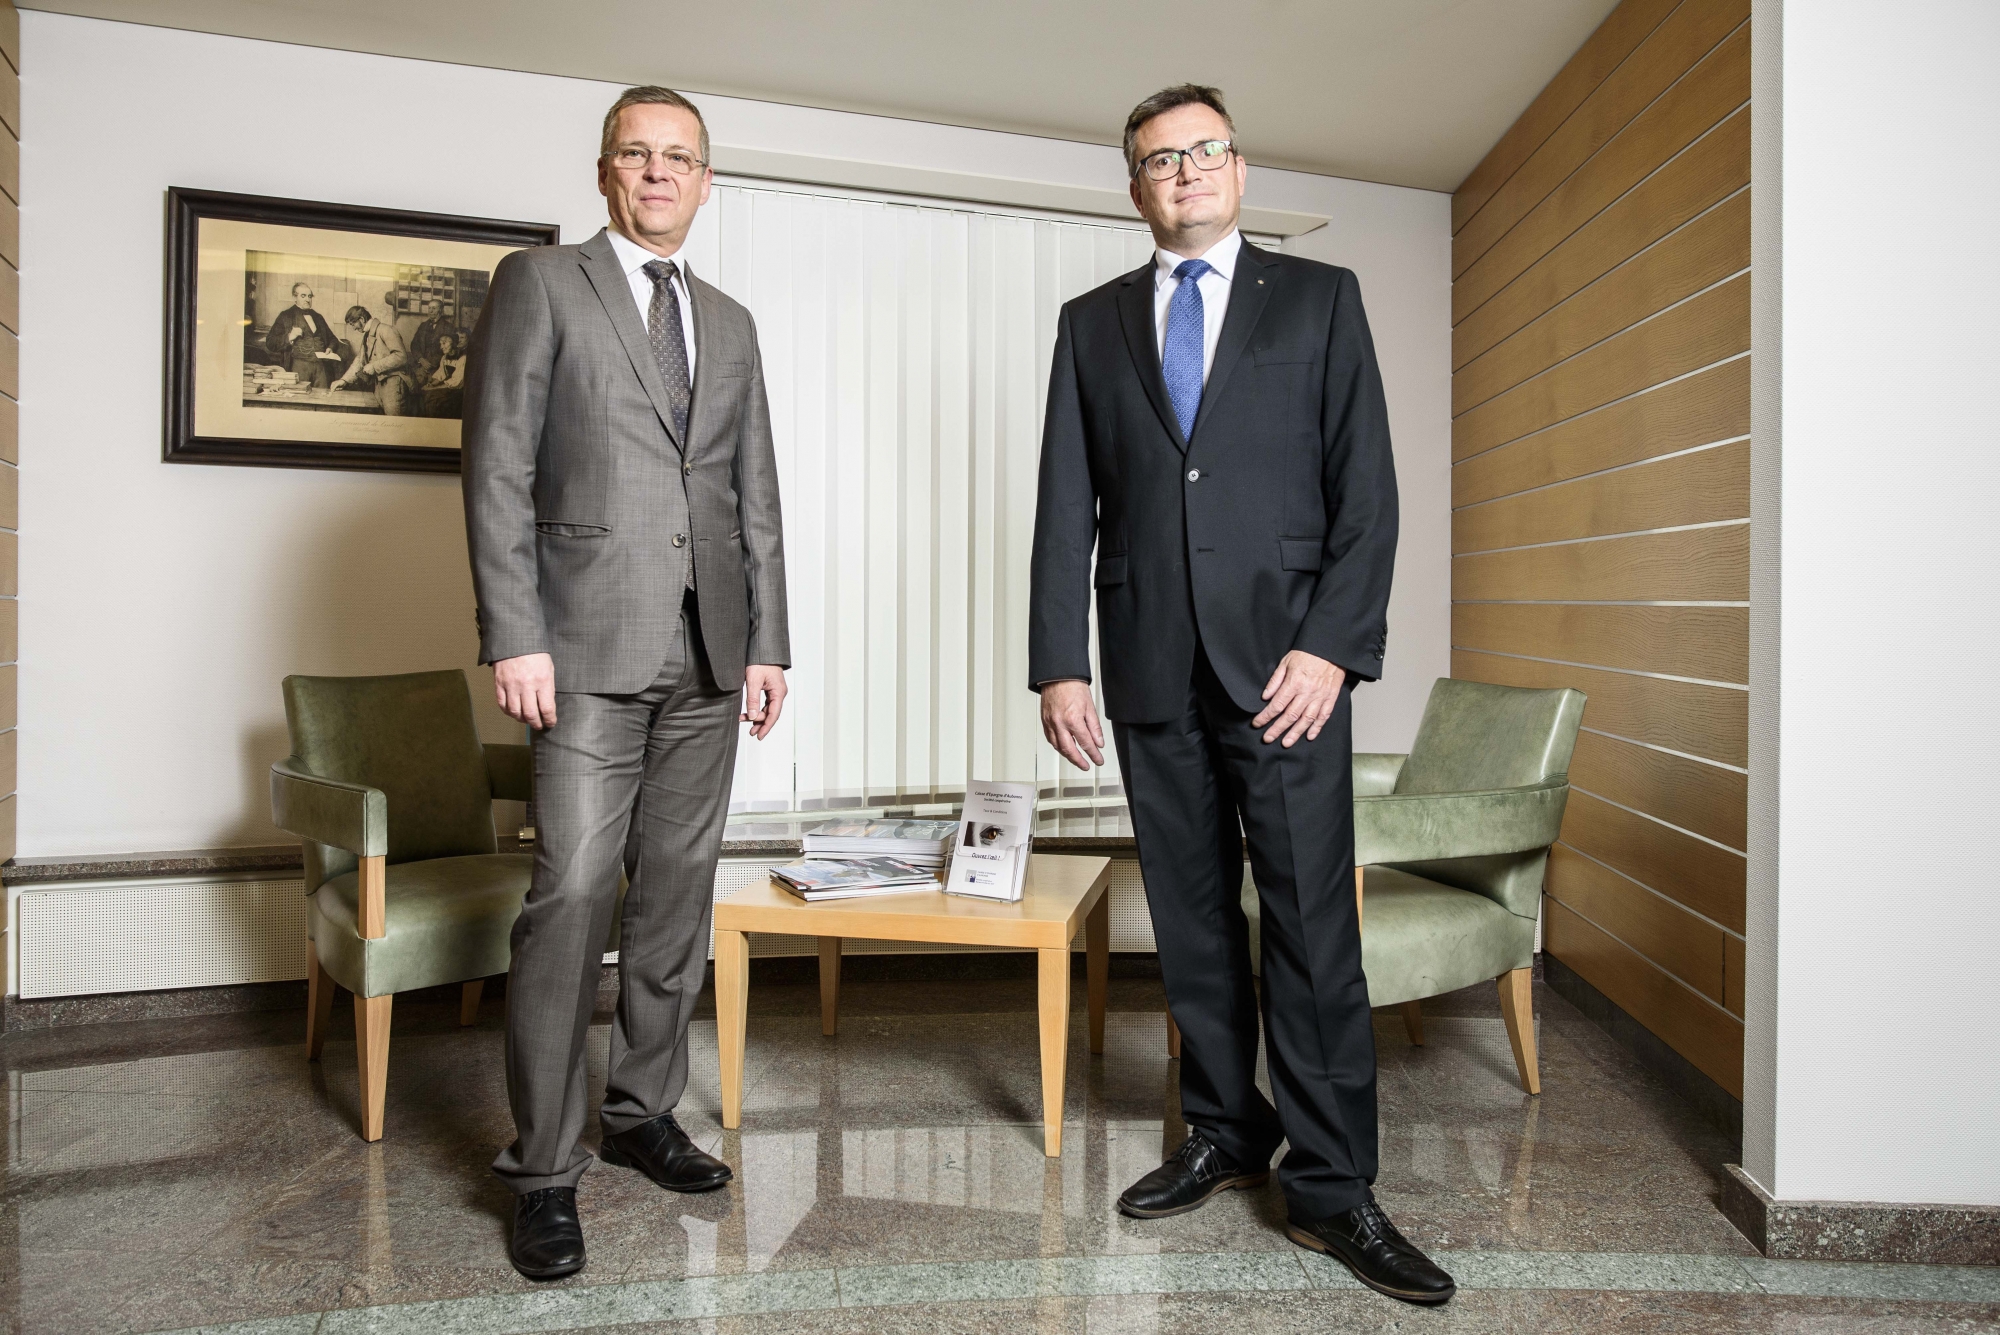 La Caisse d’Epargne d’Aubonne se hisse à nouveau à la première place parmi les meilleurs banques de détail de Suisse. Ses deux directeurs: Fabio Mosena (à g.) et Olivier Thibaud (à dr.).
